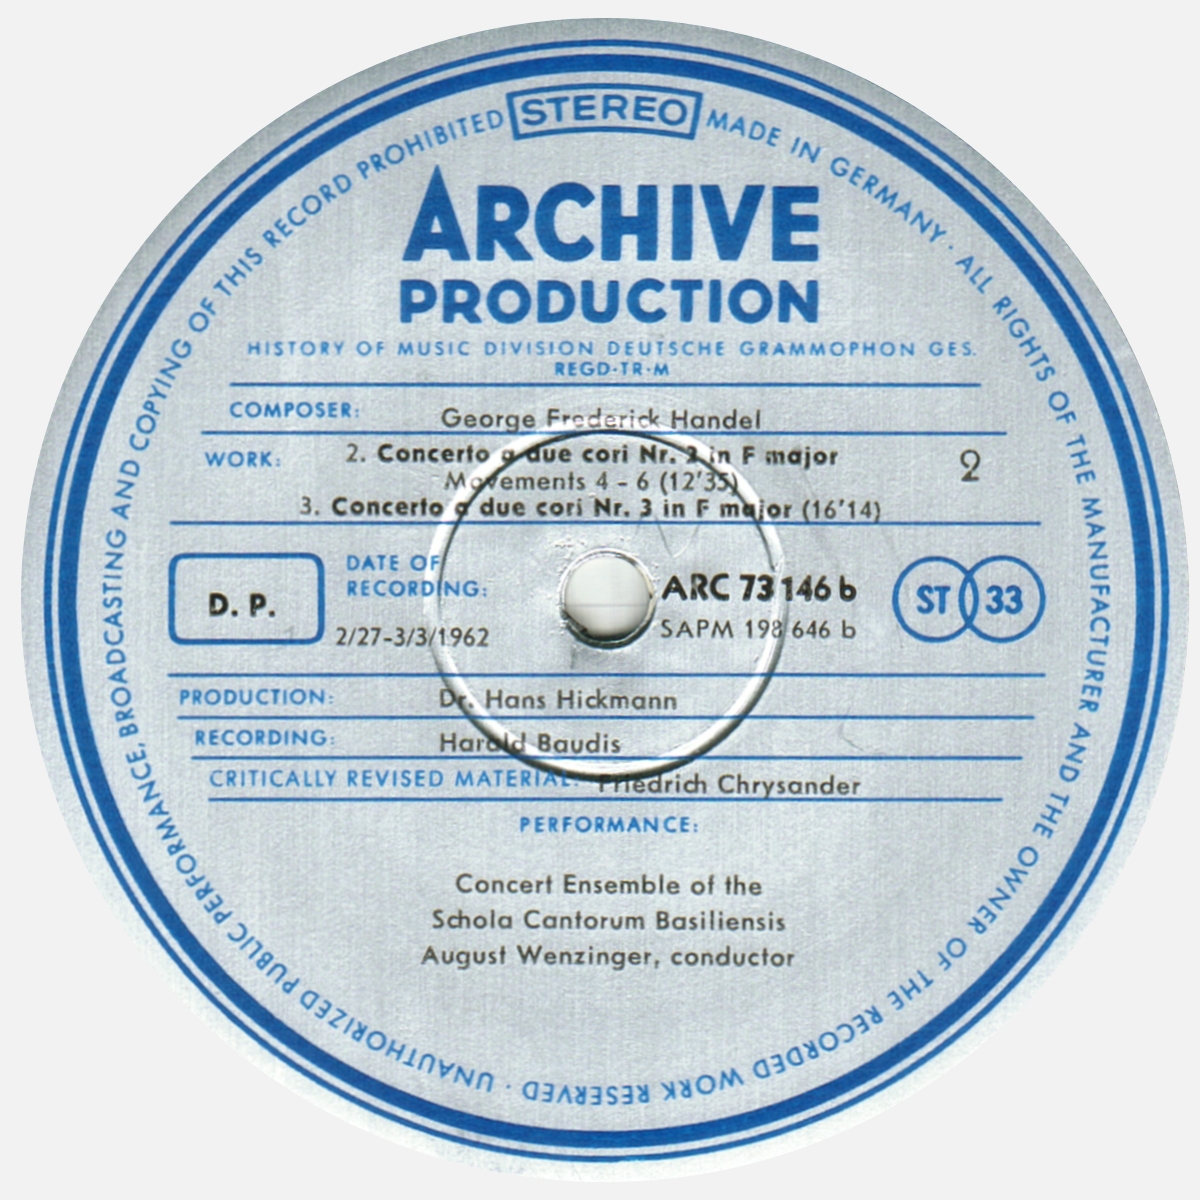 Étiquette verso disque Deutsche Grammophon Archive Production ARC 73146 198646 SAPM, cliquer pour une vue agrandie